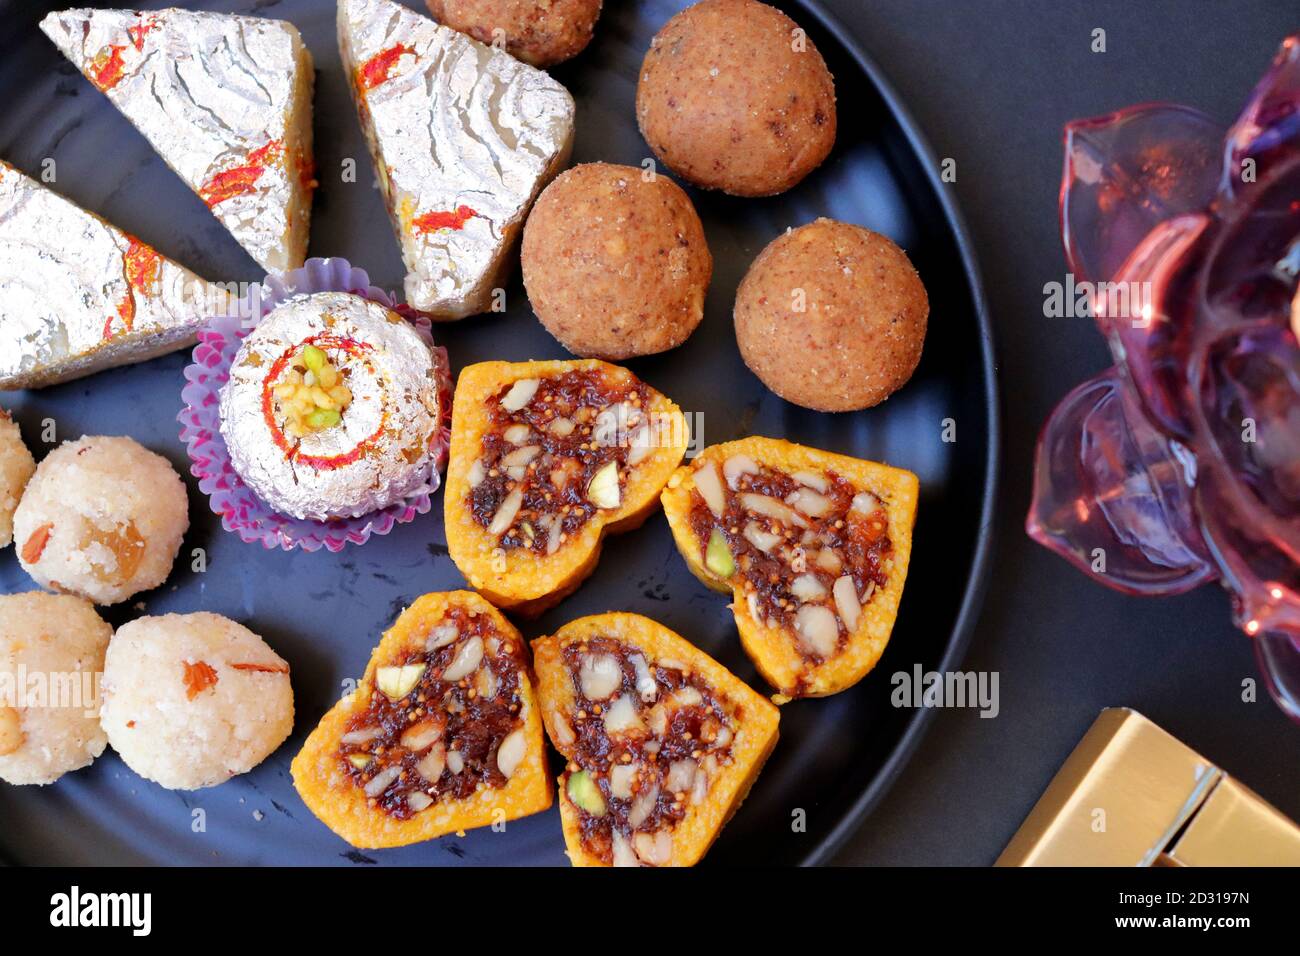 Verschiedene indische Süßigkeiten oder Mithai, Rava laddoo, Besan laddu, Trockenfrüchte Süßigkeiten in einem schwarzen Teller zusammen mit Happy Diwali Schokolade für Diwali Festival. Stockfoto